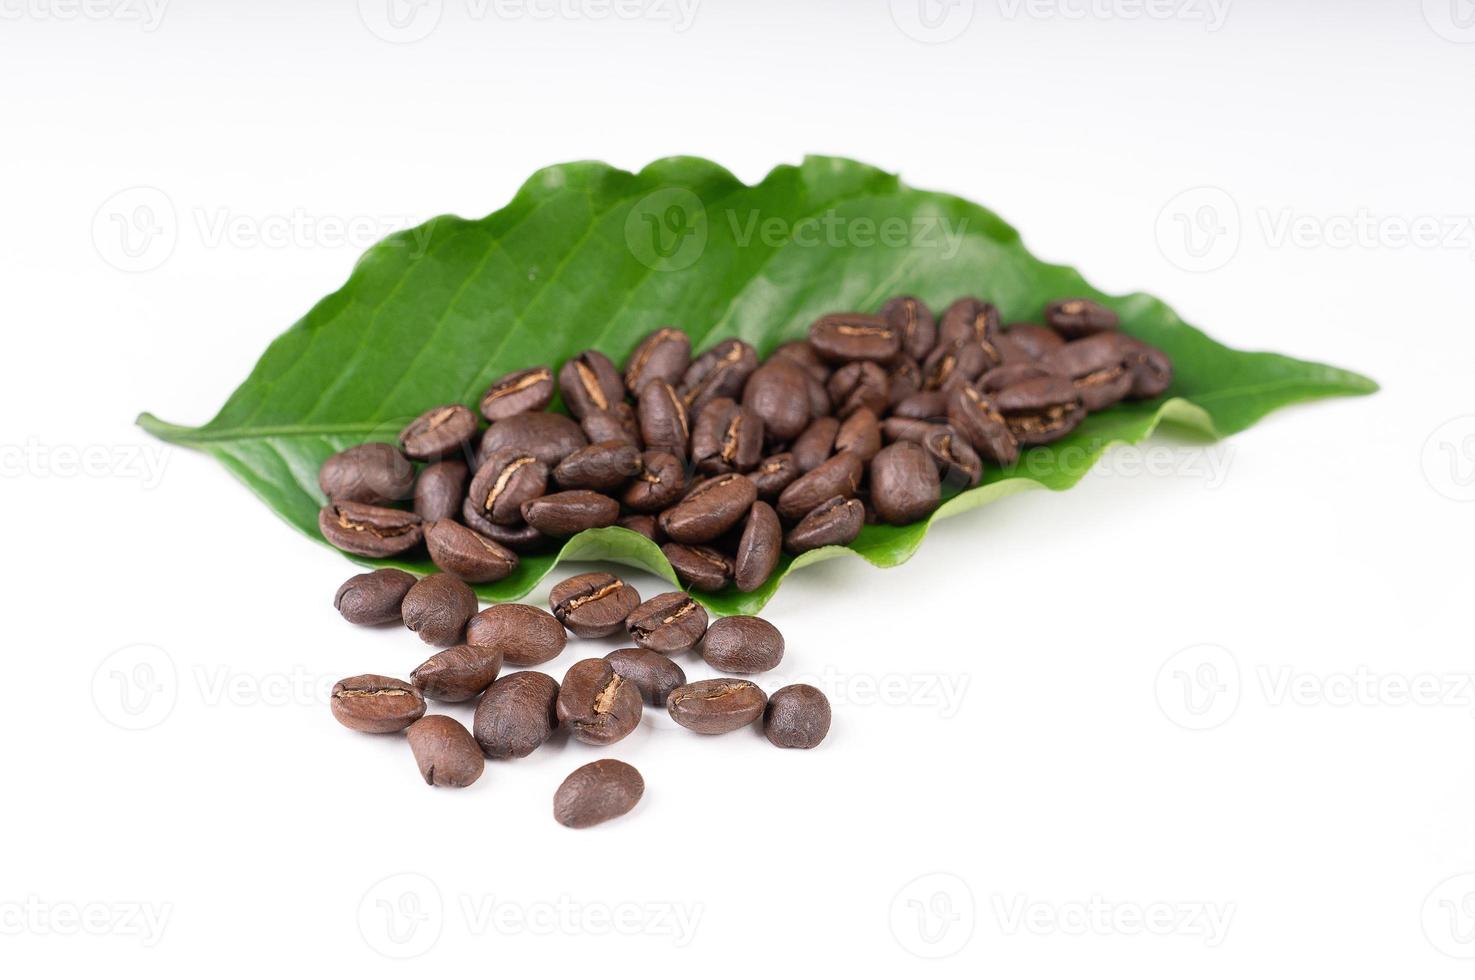 rostade kaffebönor med ledighet på vit bakgrund foto